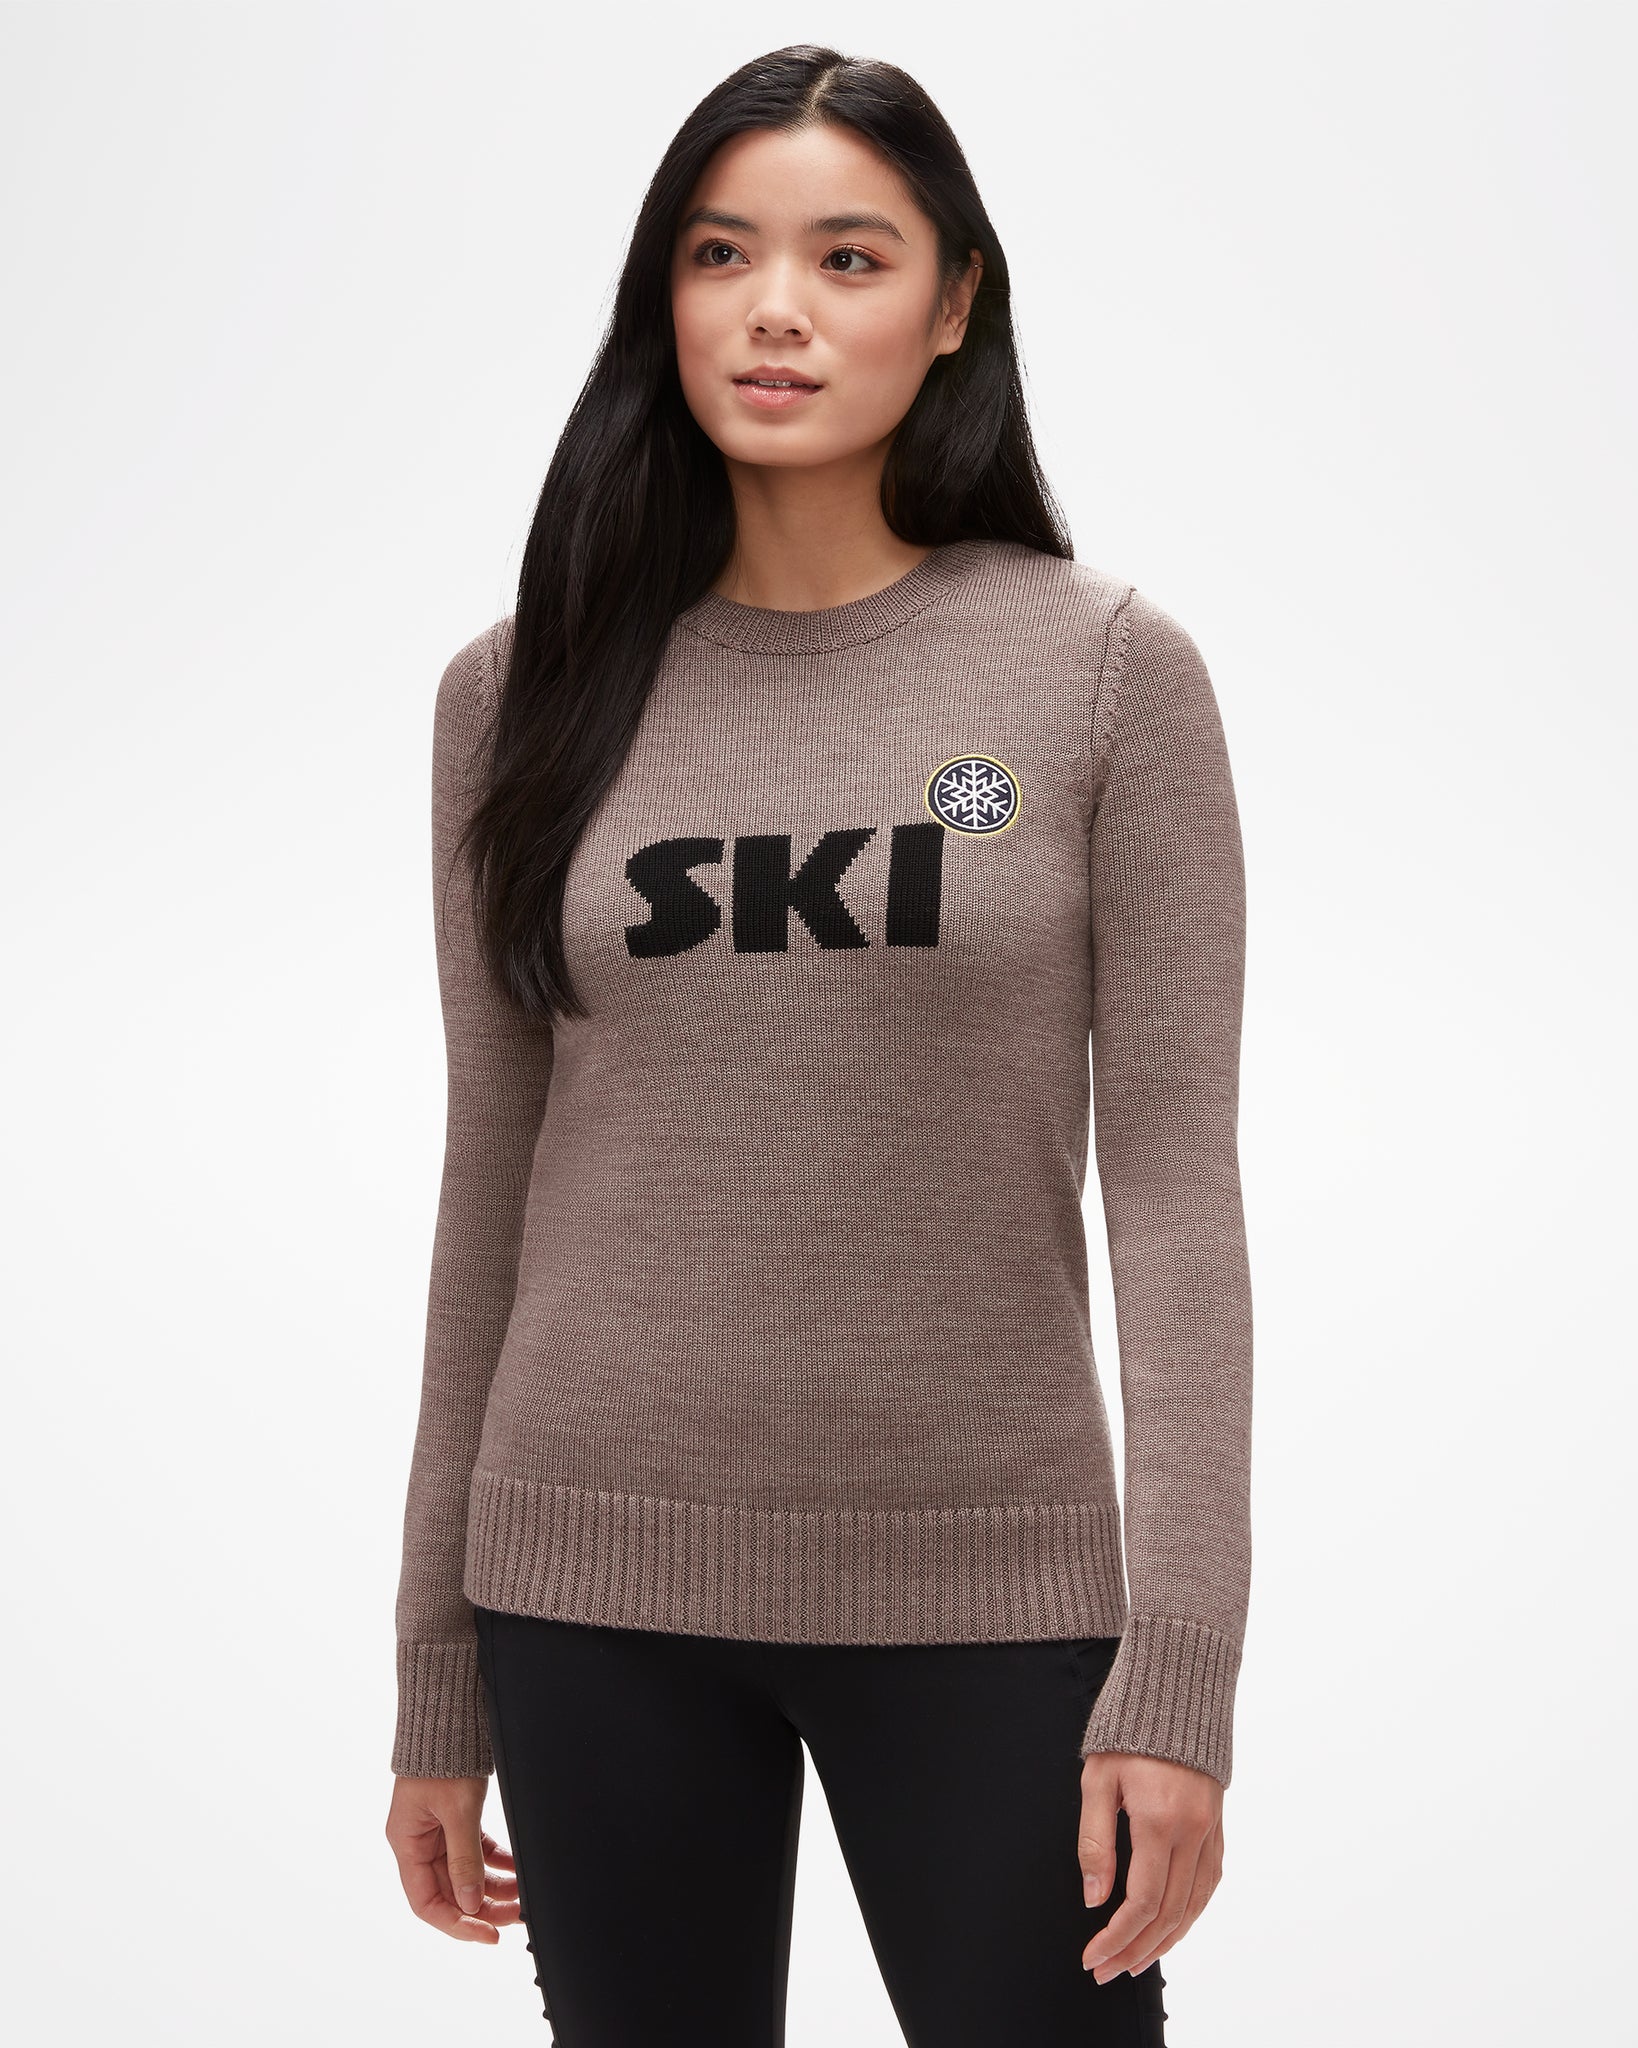 Ski Women's Sweater